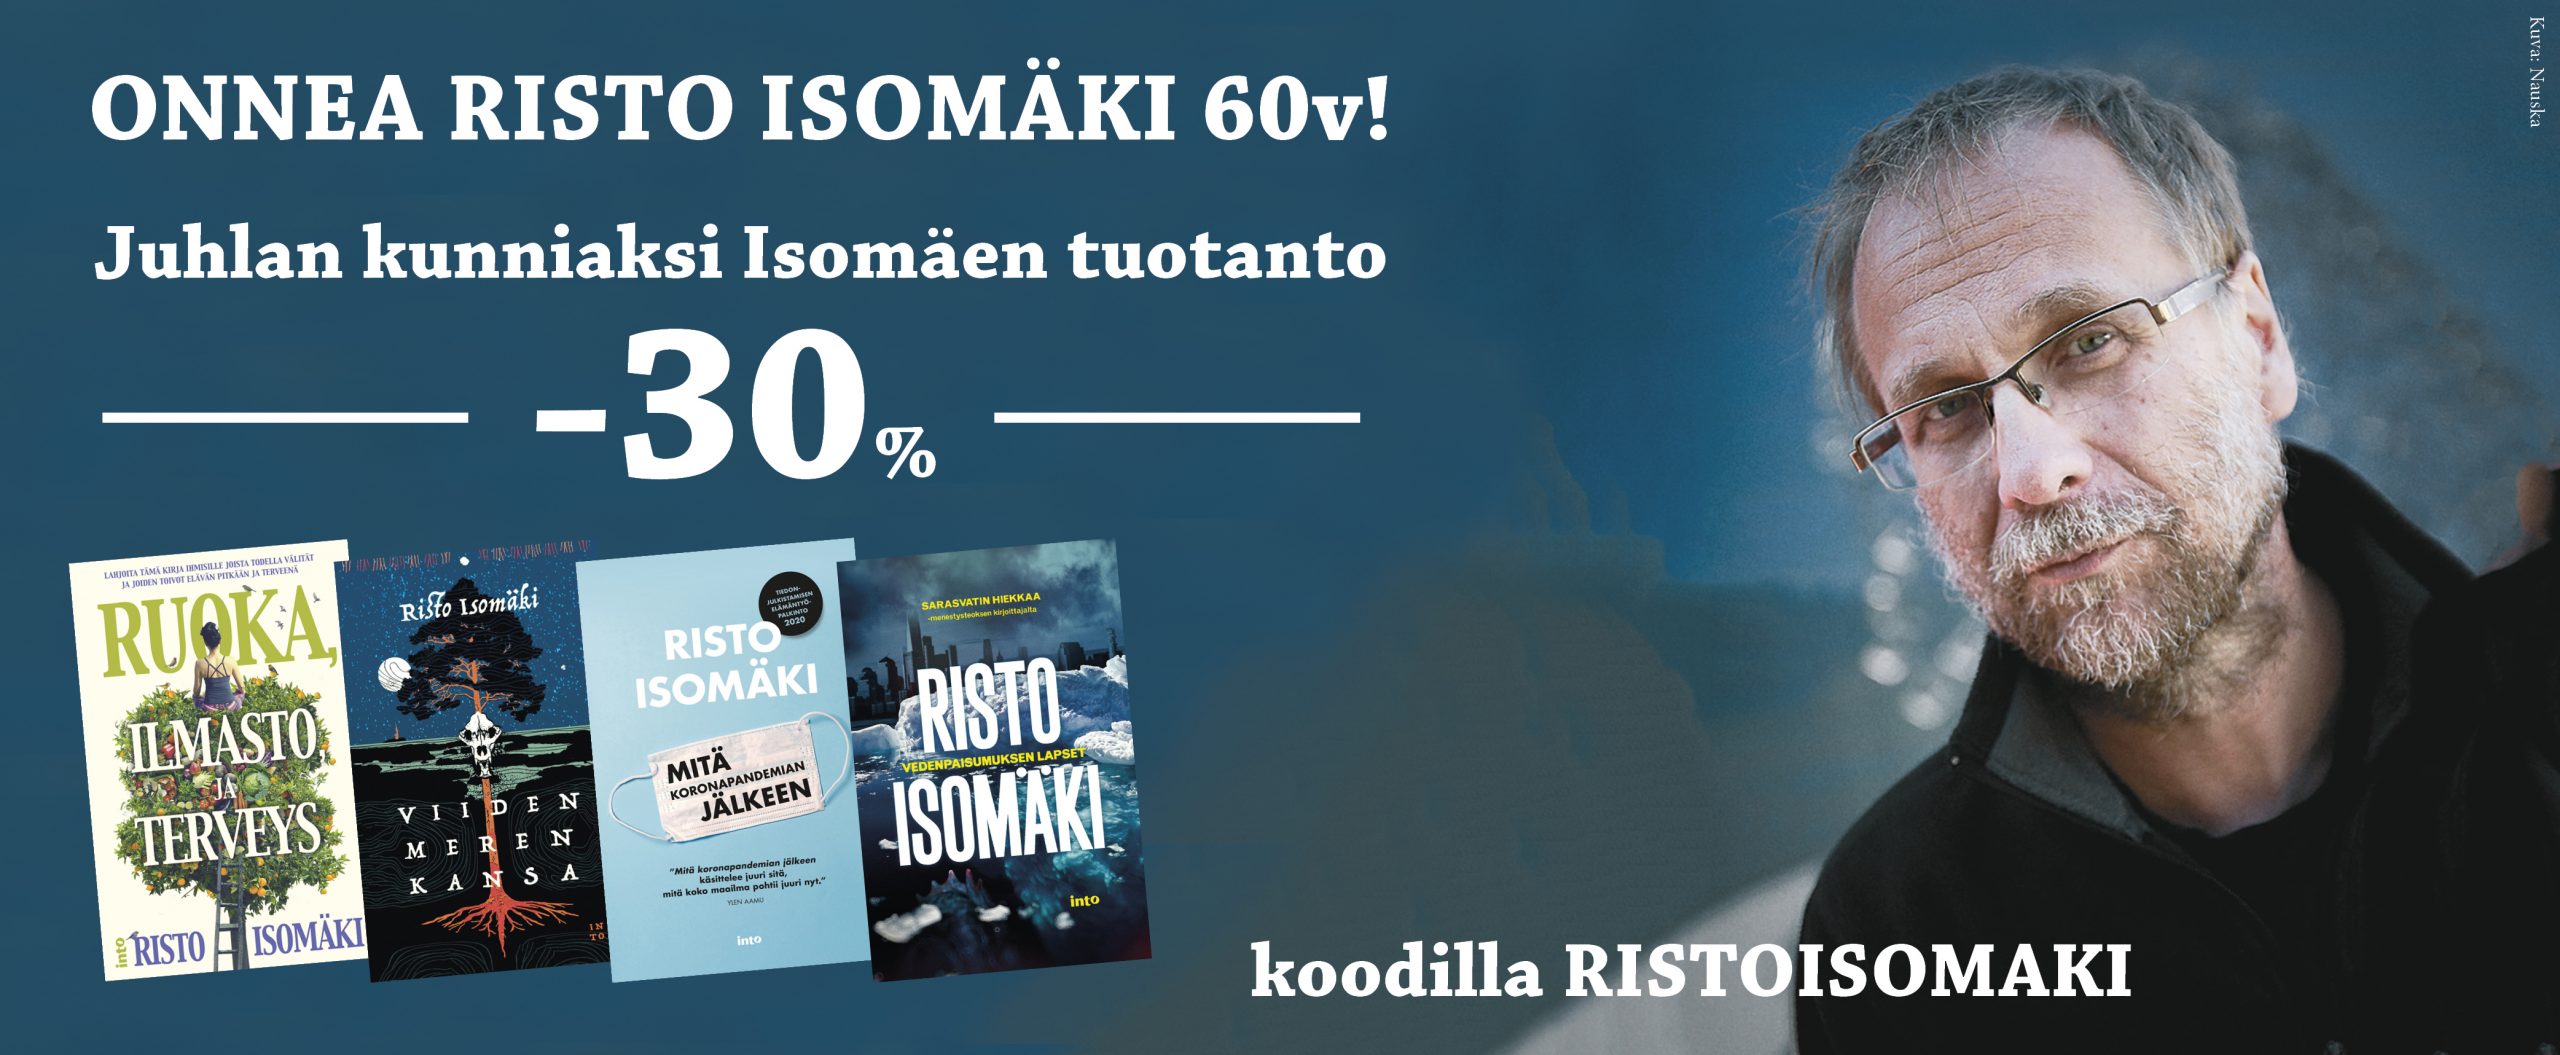 Risto Isomäki 60 vuotta!